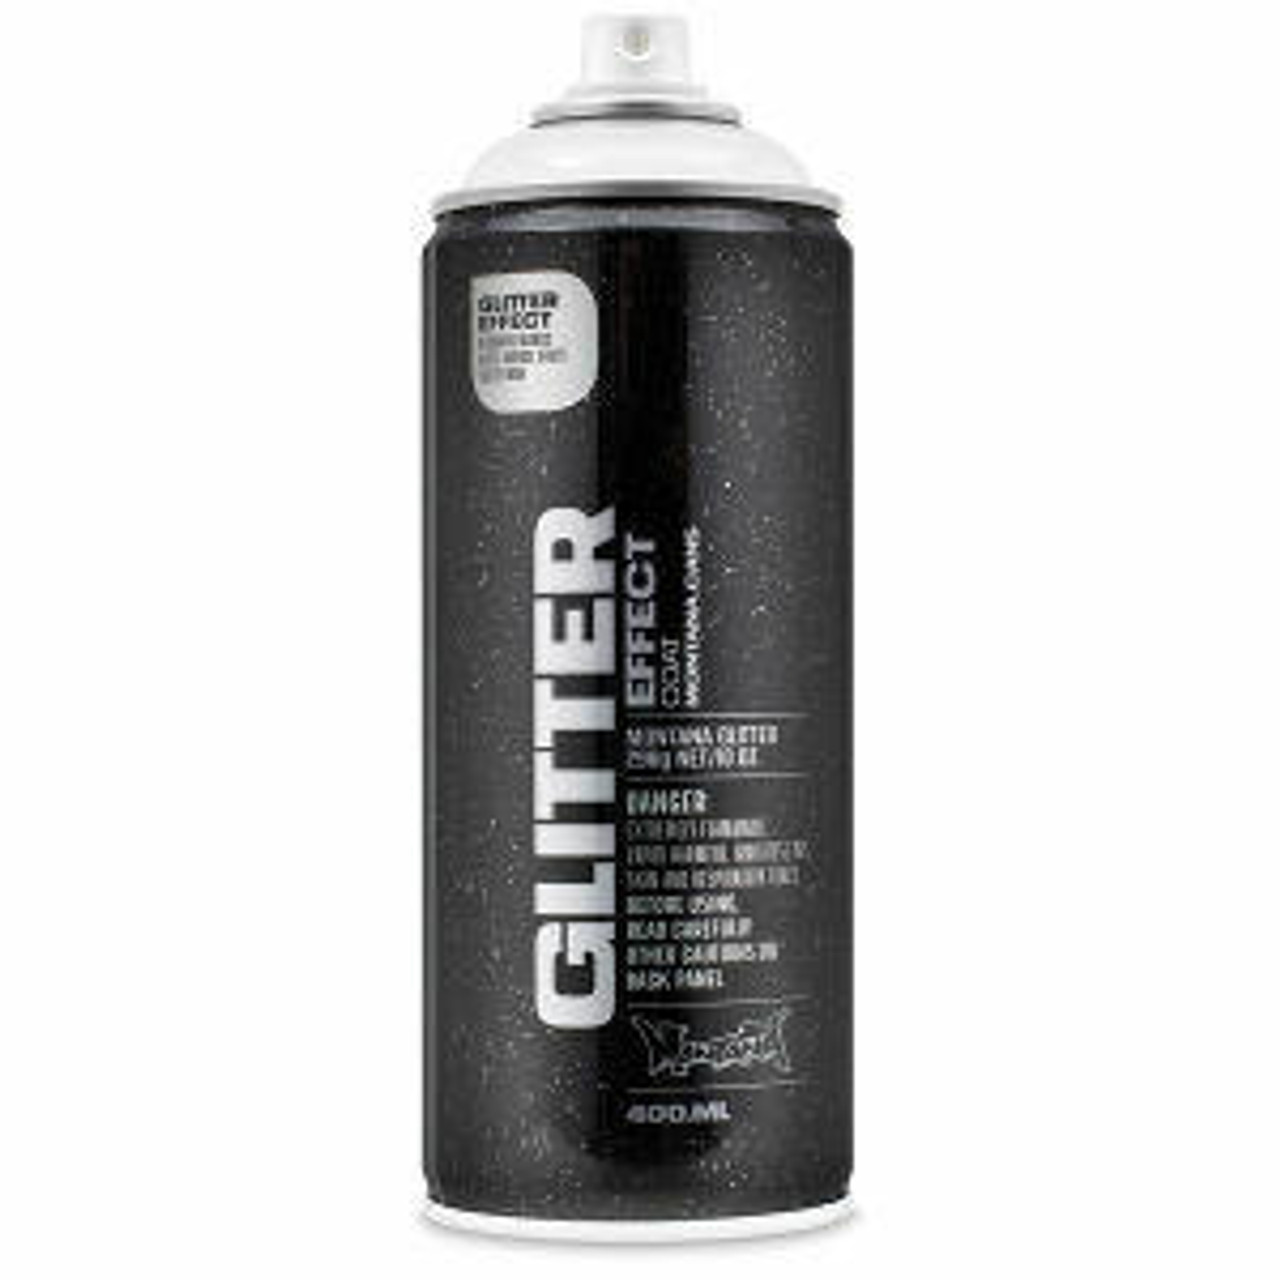 Glimmer Body Glue Refill XL - Glimmer Body Art